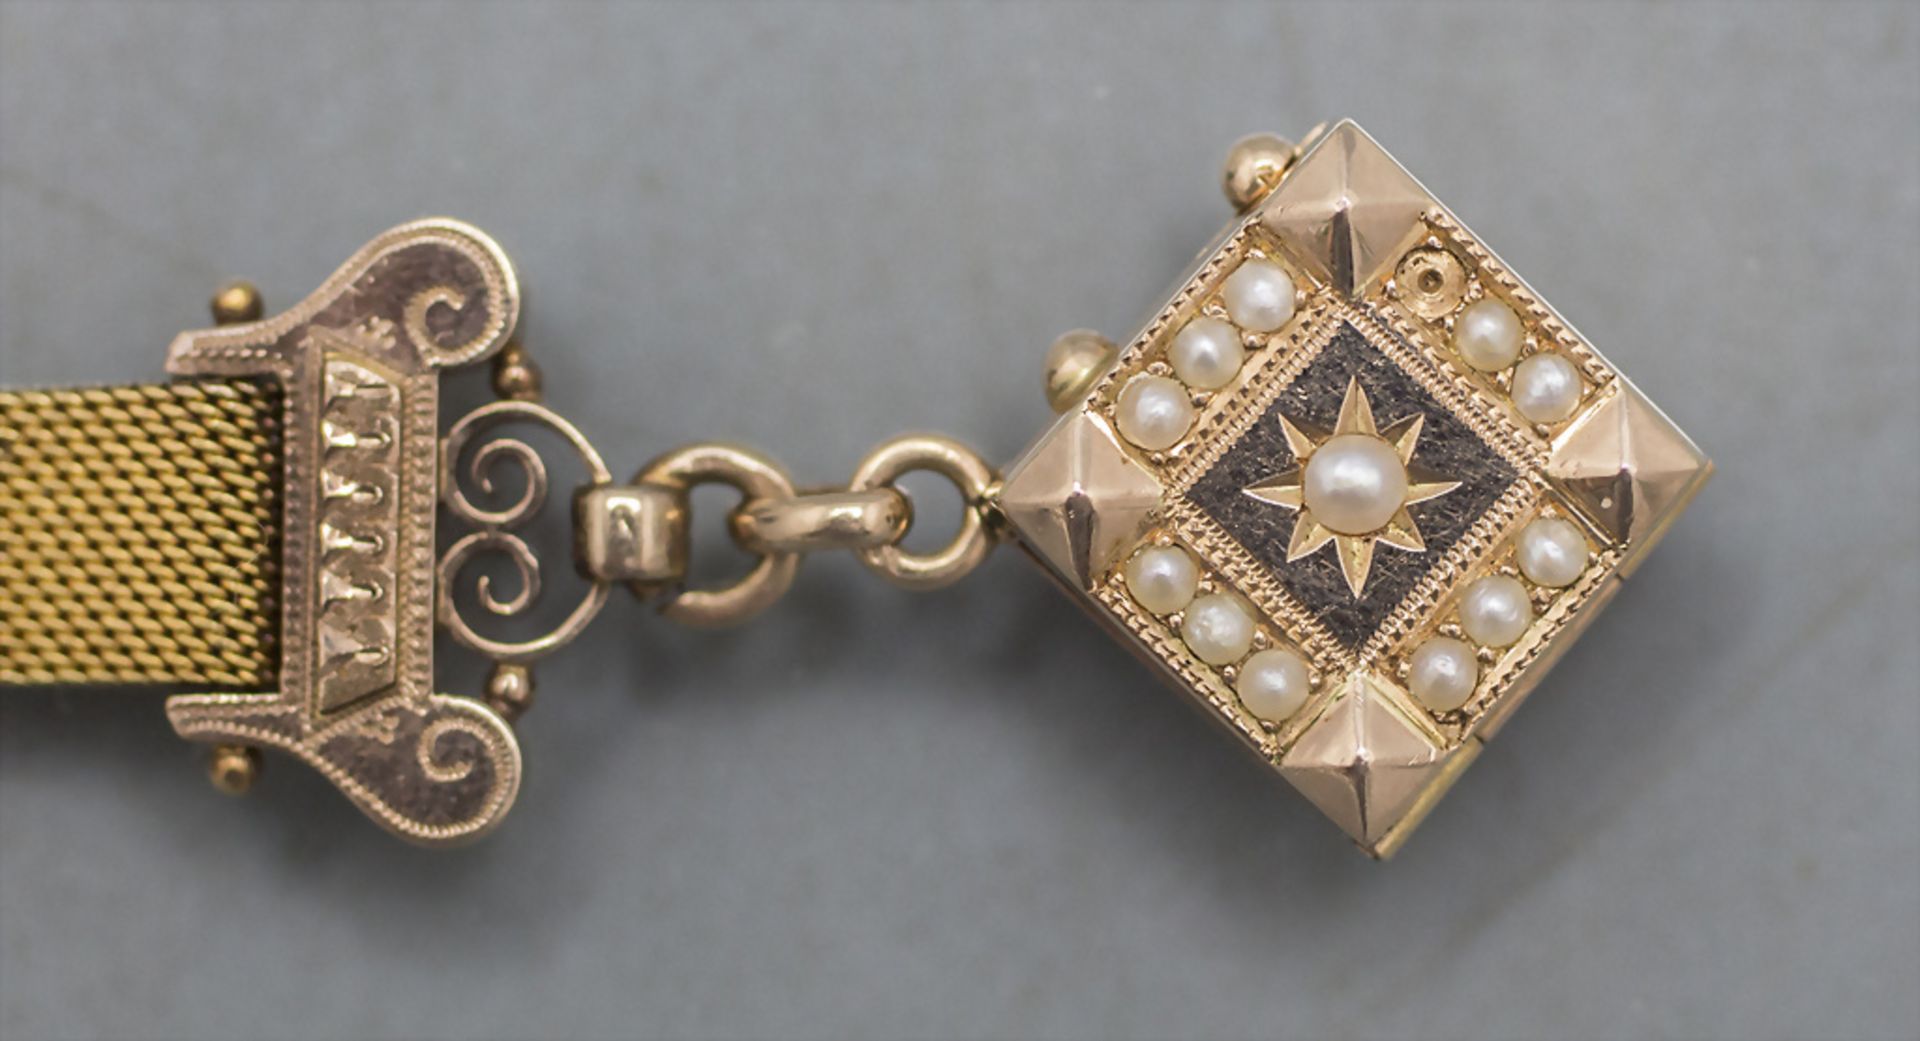 Chatelaine / Uhrenkette in Gold / A 14 ct gold watch chain, 19. Jh. - Bild 2 aus 6